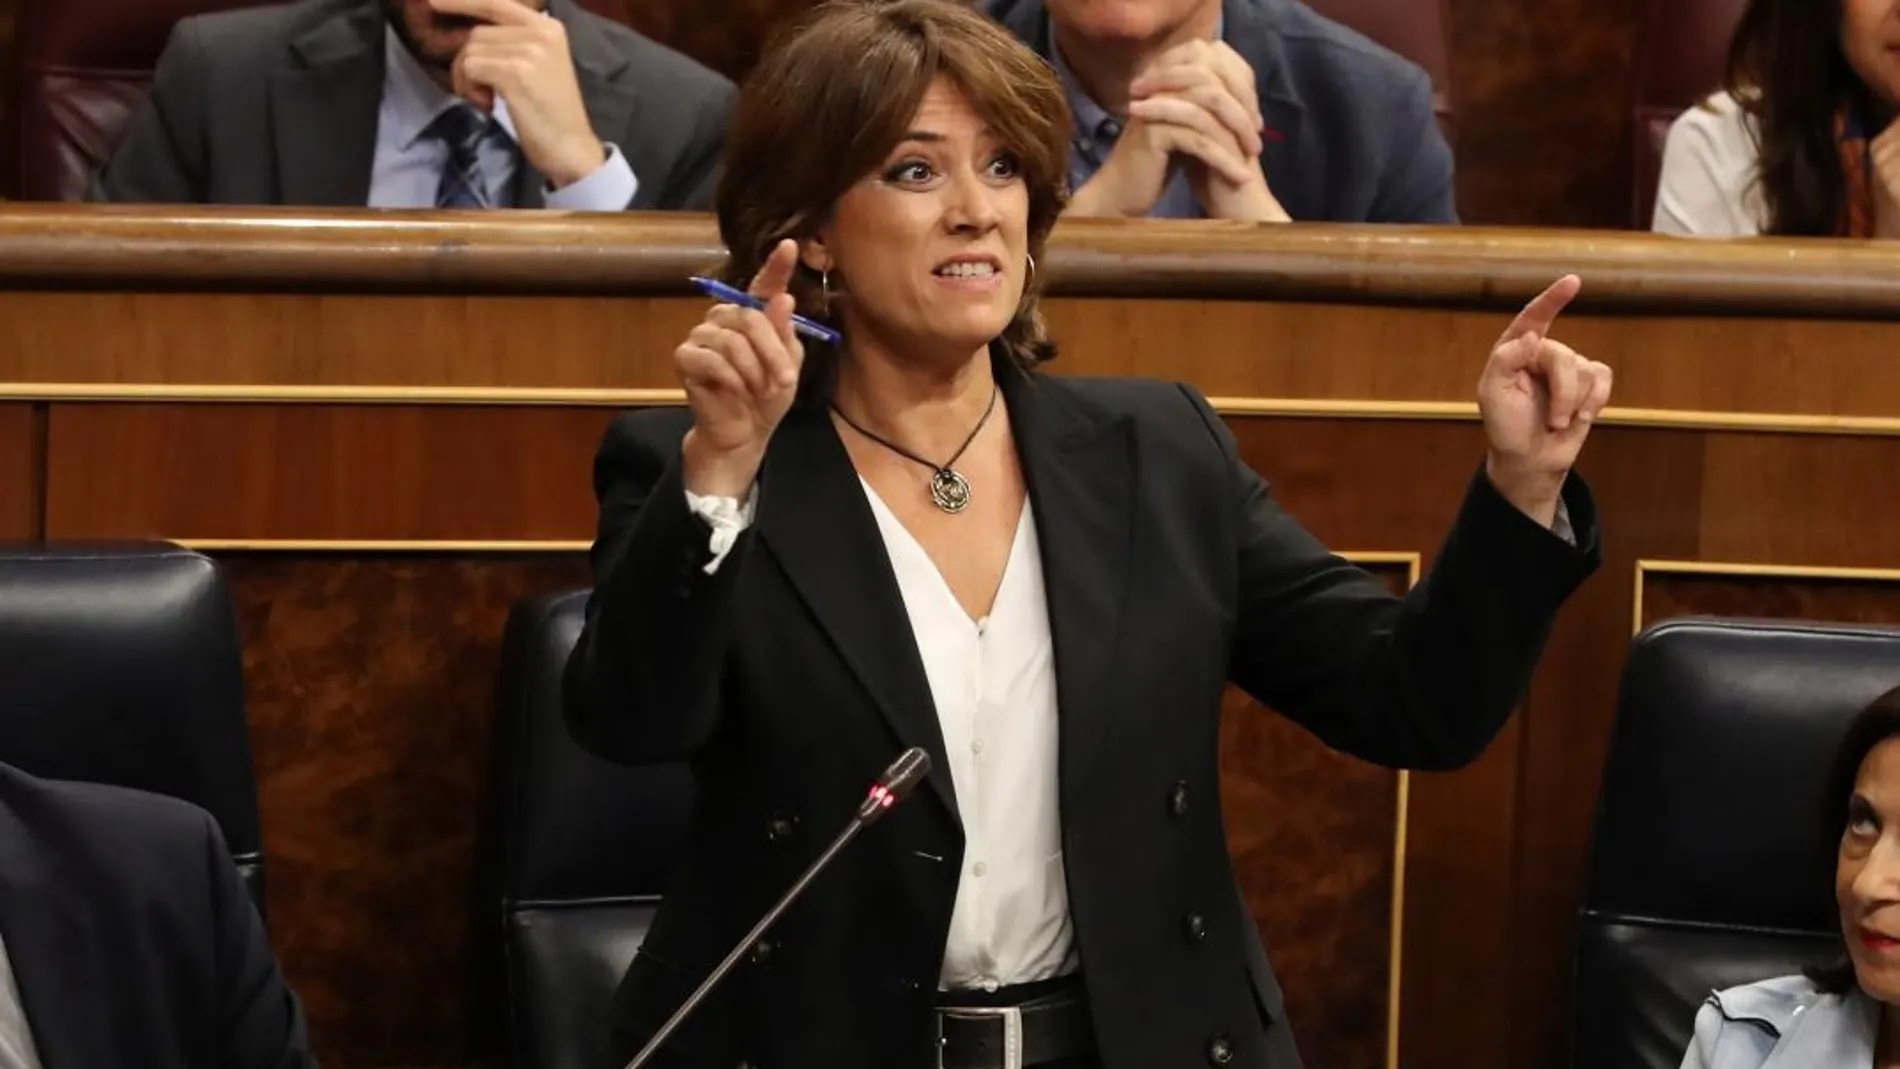 La ministra de Justicia, Dolores Delgado, durante su intervención en la sesión de control del Congreso. Foto: Efe